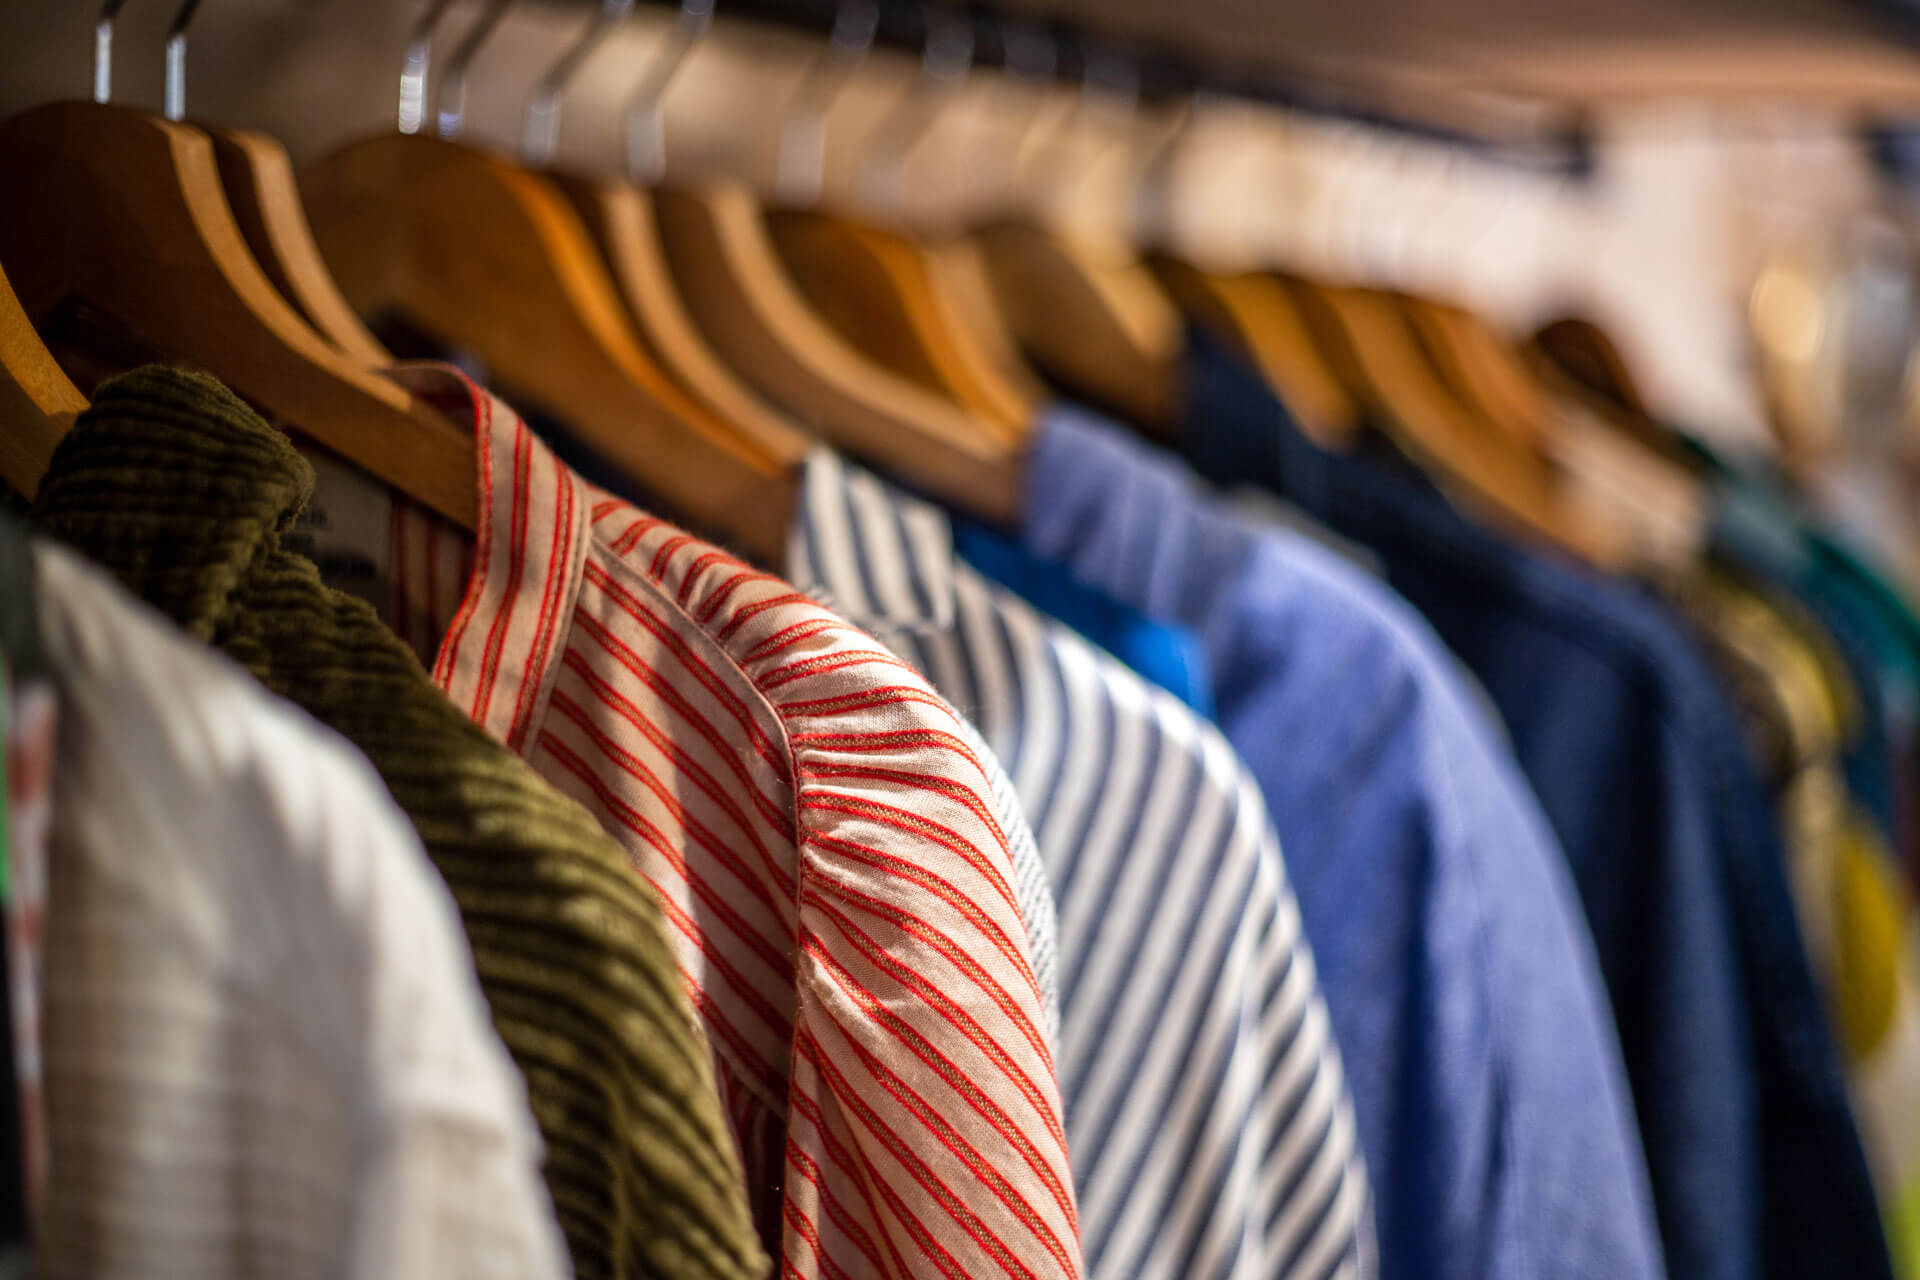 Melocoton boutique vêtements sur cintres chemises et pulls